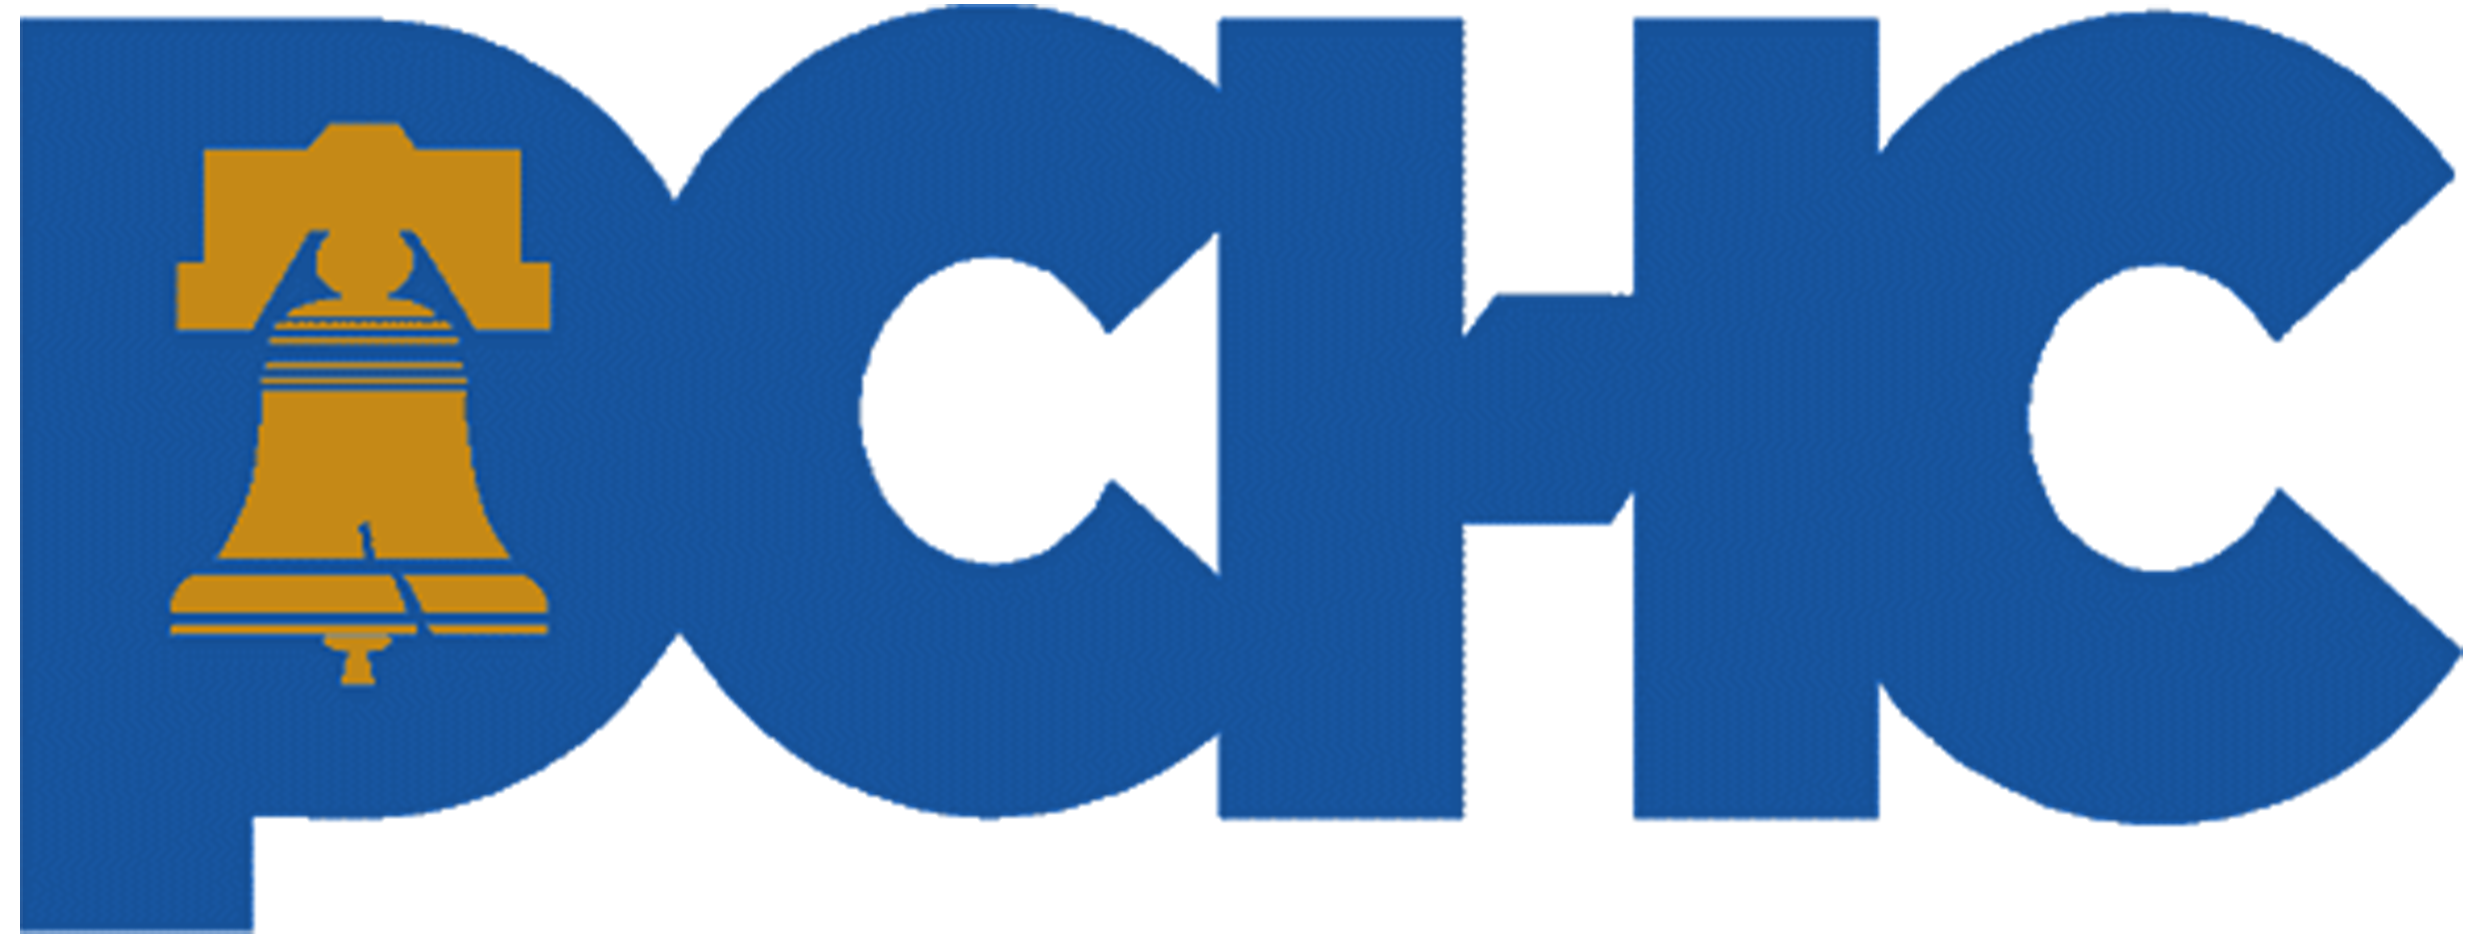 PCHC logo